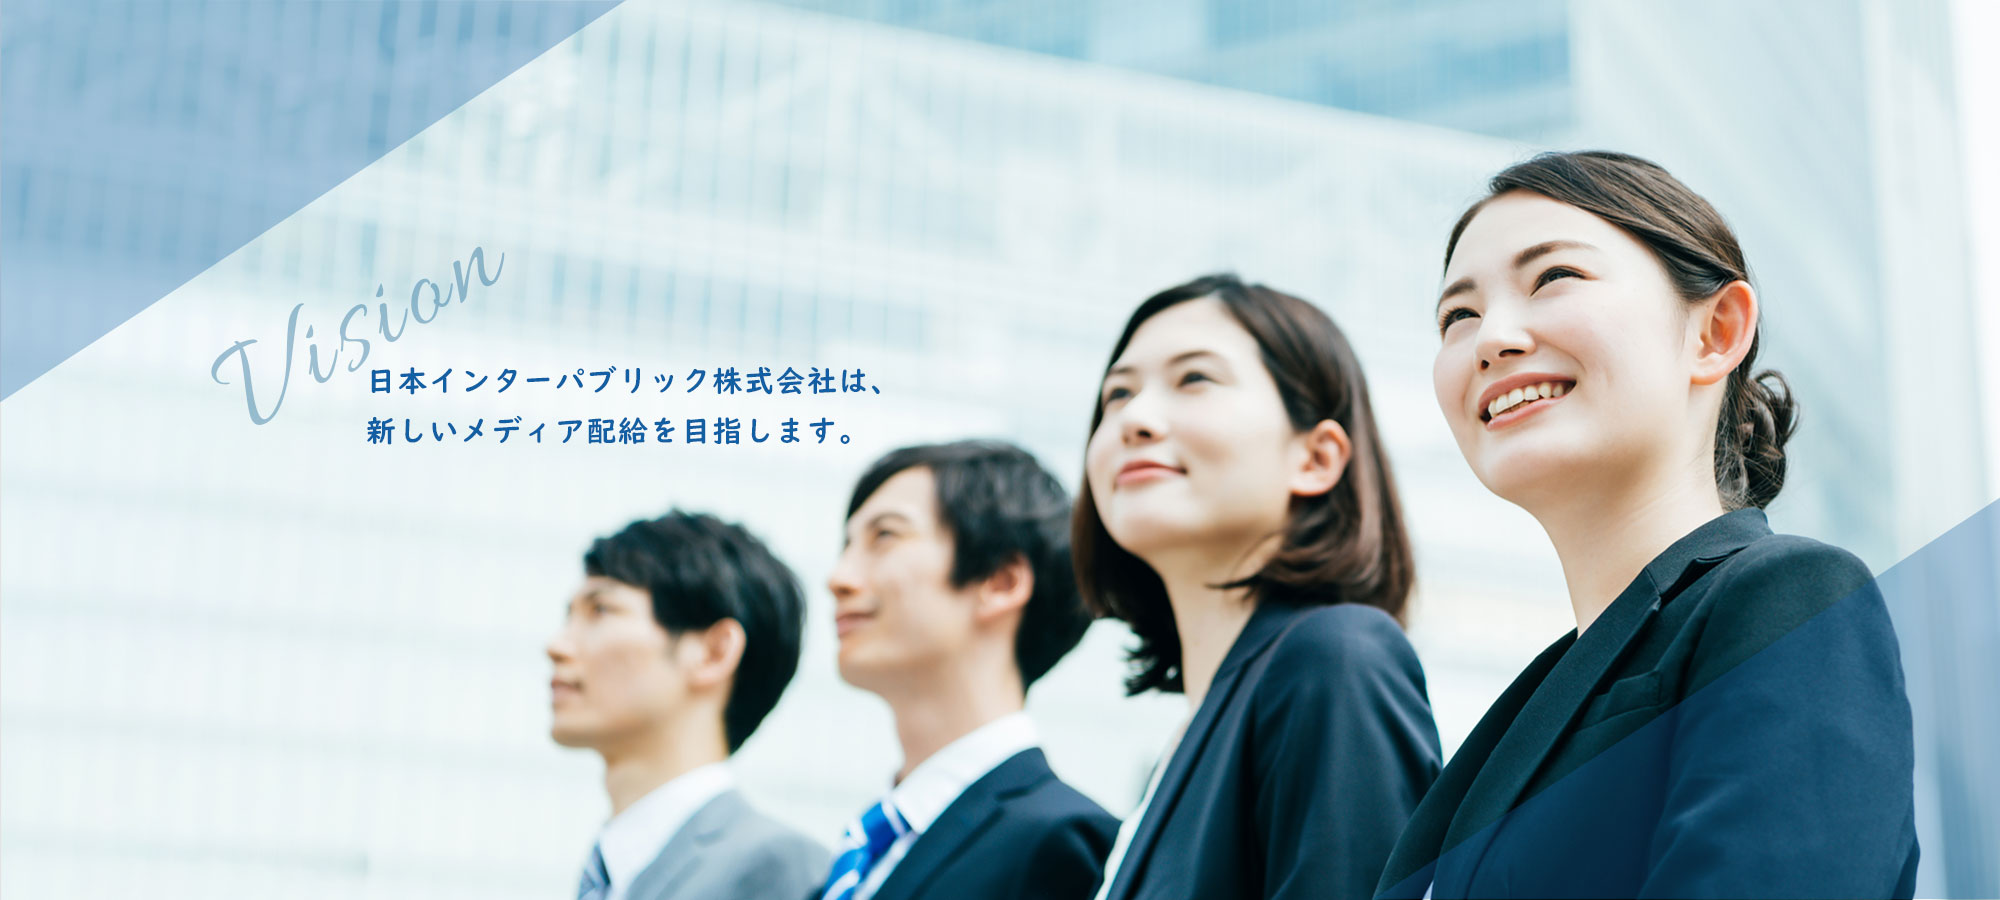 日本インターパブリック株式会社は、新しいメディア配給をめざします。